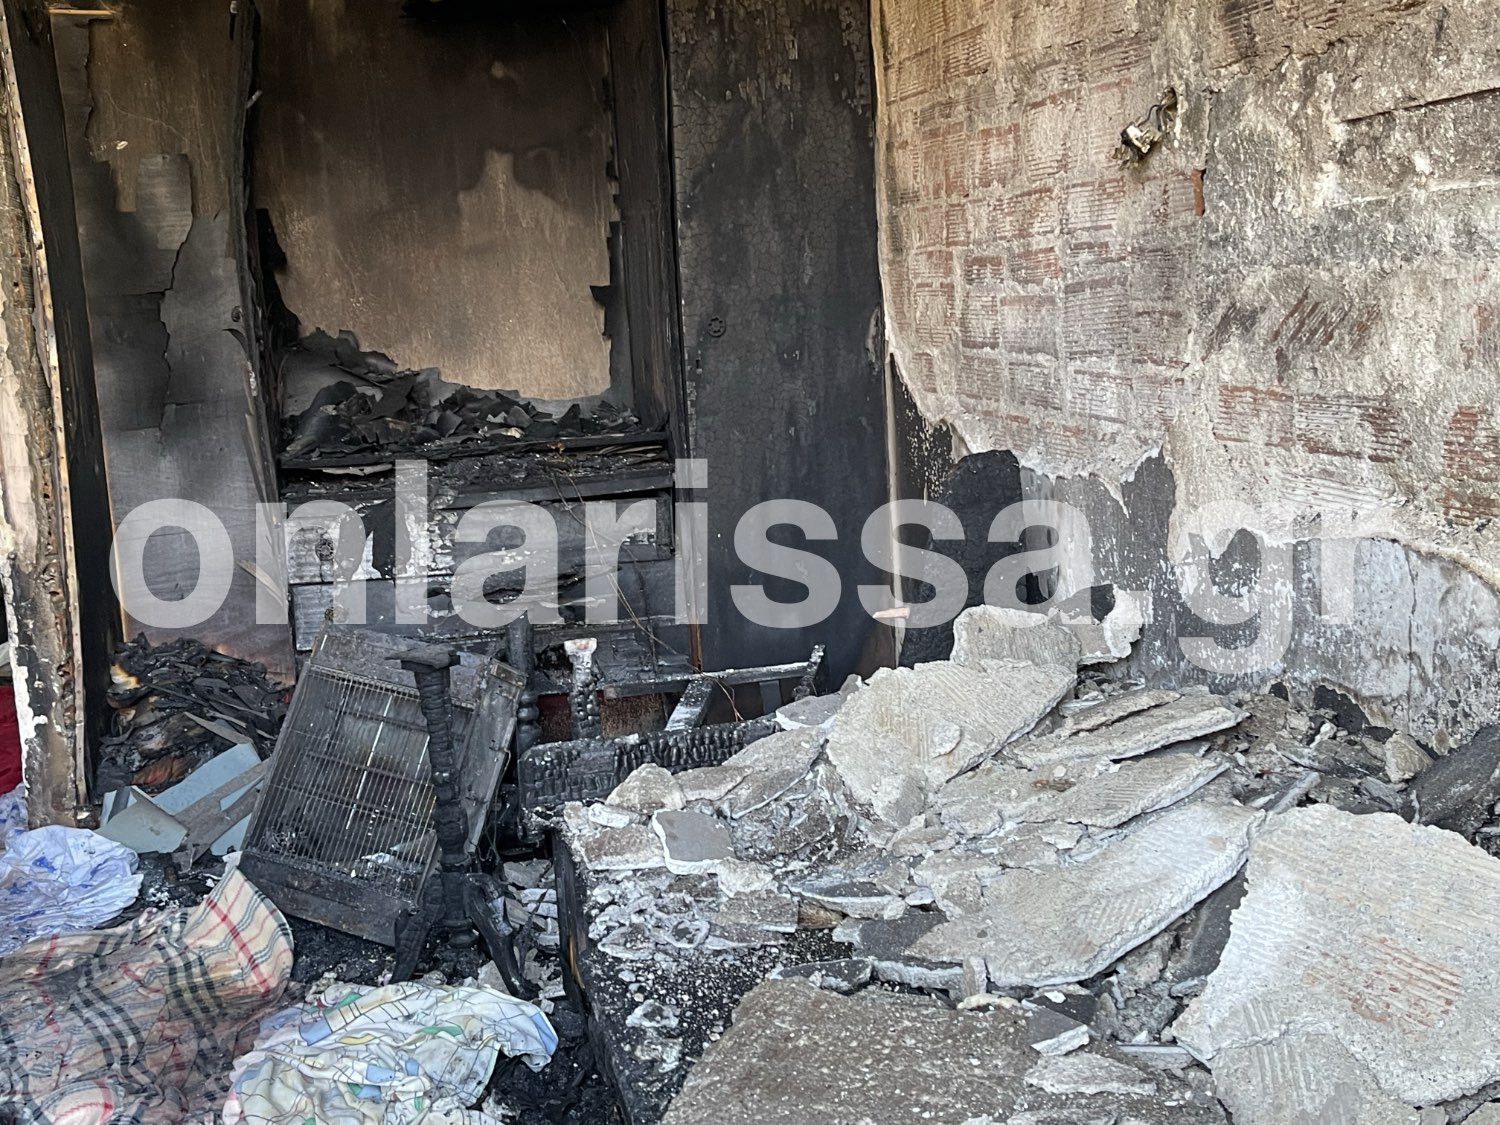 Λάρισα: Κάηκε ζωντανός στο κρεβάτι που έπεσε για ύπνο – Οι εικόνες της ασύλληπτης τραγωδίας